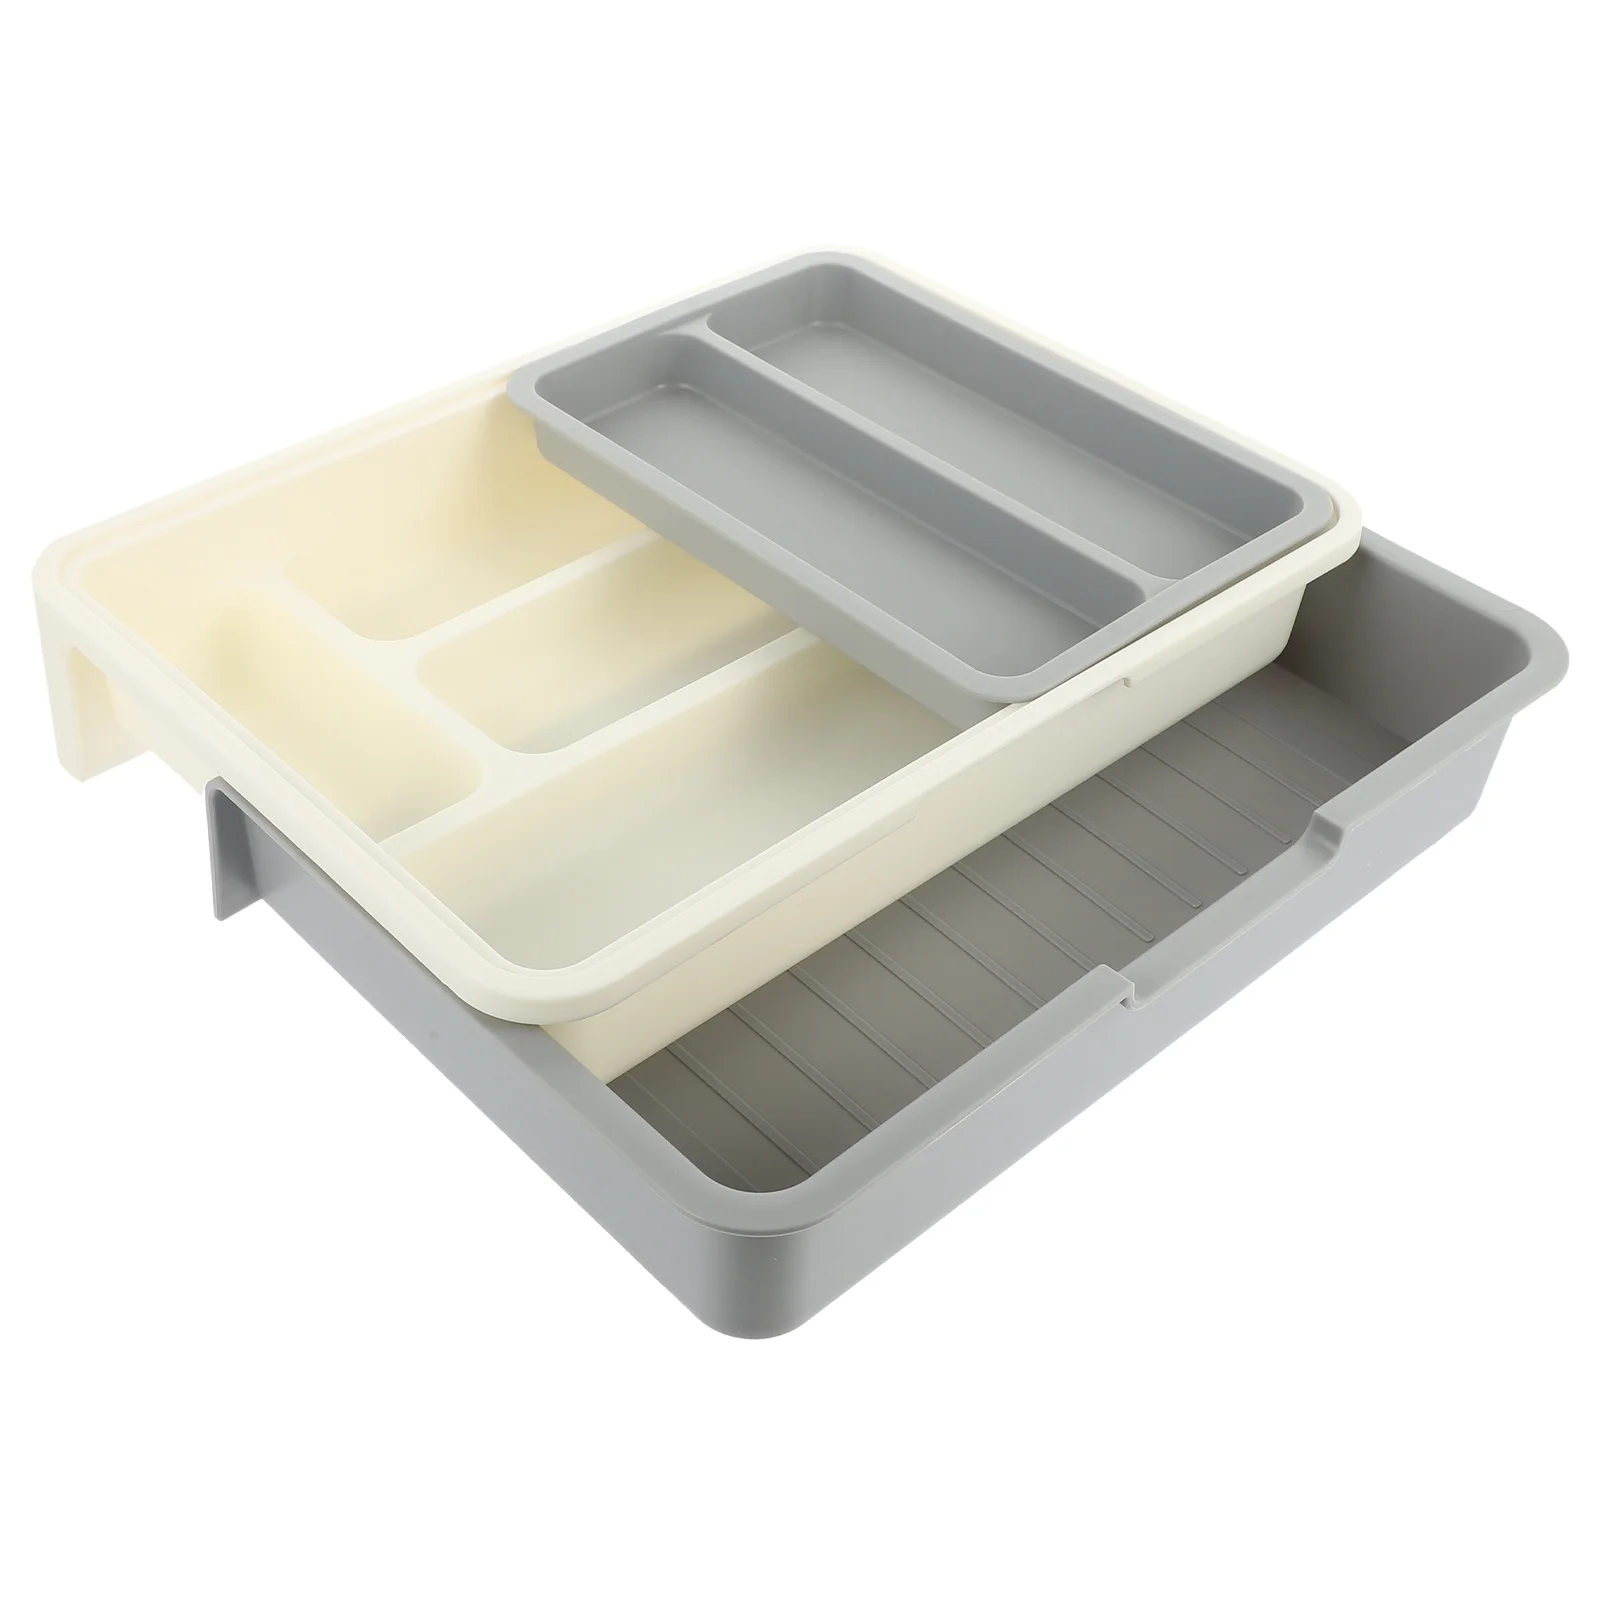 

Organizer Utensil Silverware Tray Drawer Storage Flatware Cutlery Holder Box Kitchen Case Plastic Utensils Serving Spoon Divider